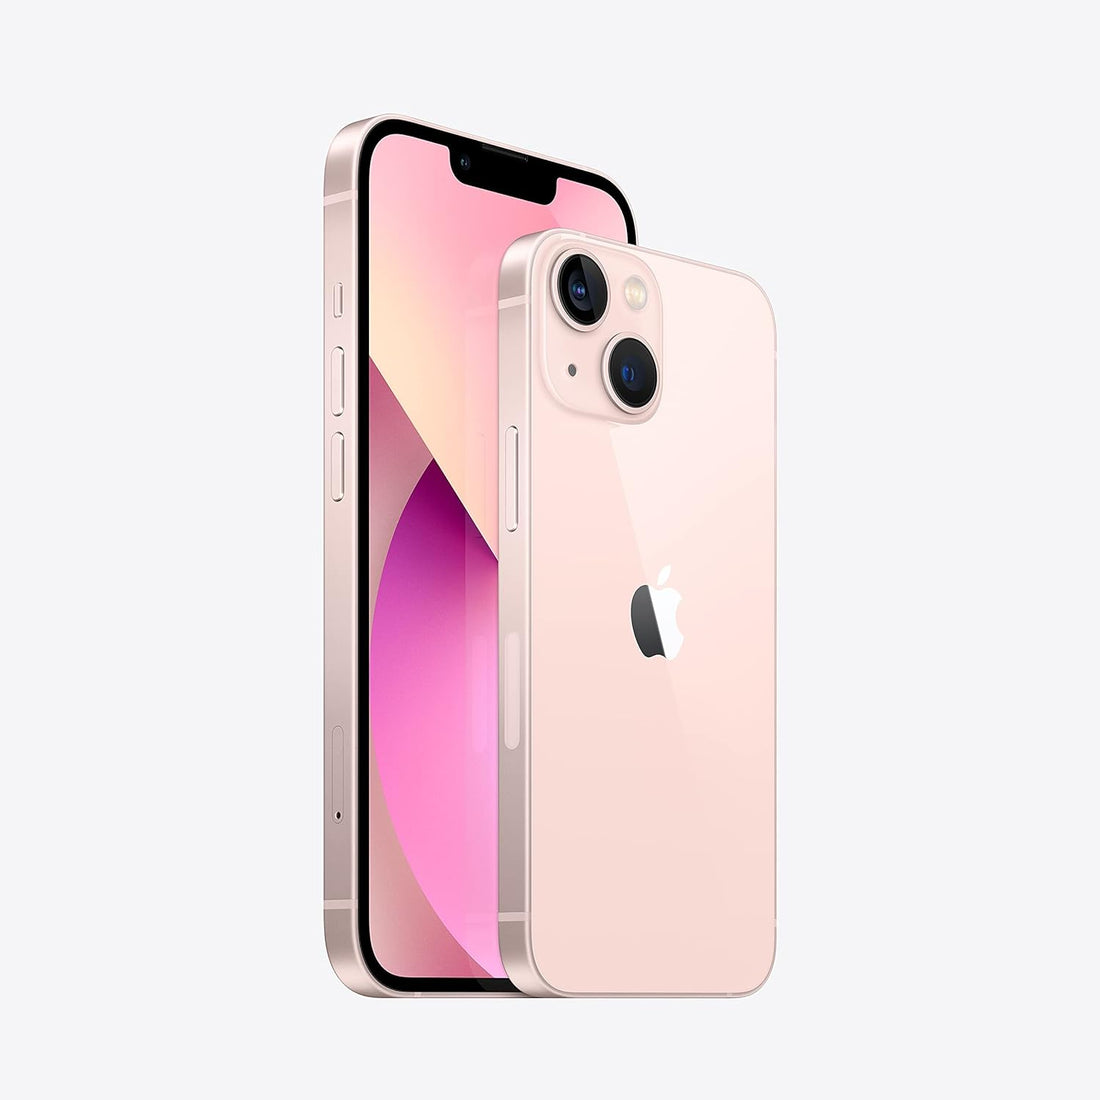 Apple iPhone 13 256GB (Unlocked) - Pink (Used)